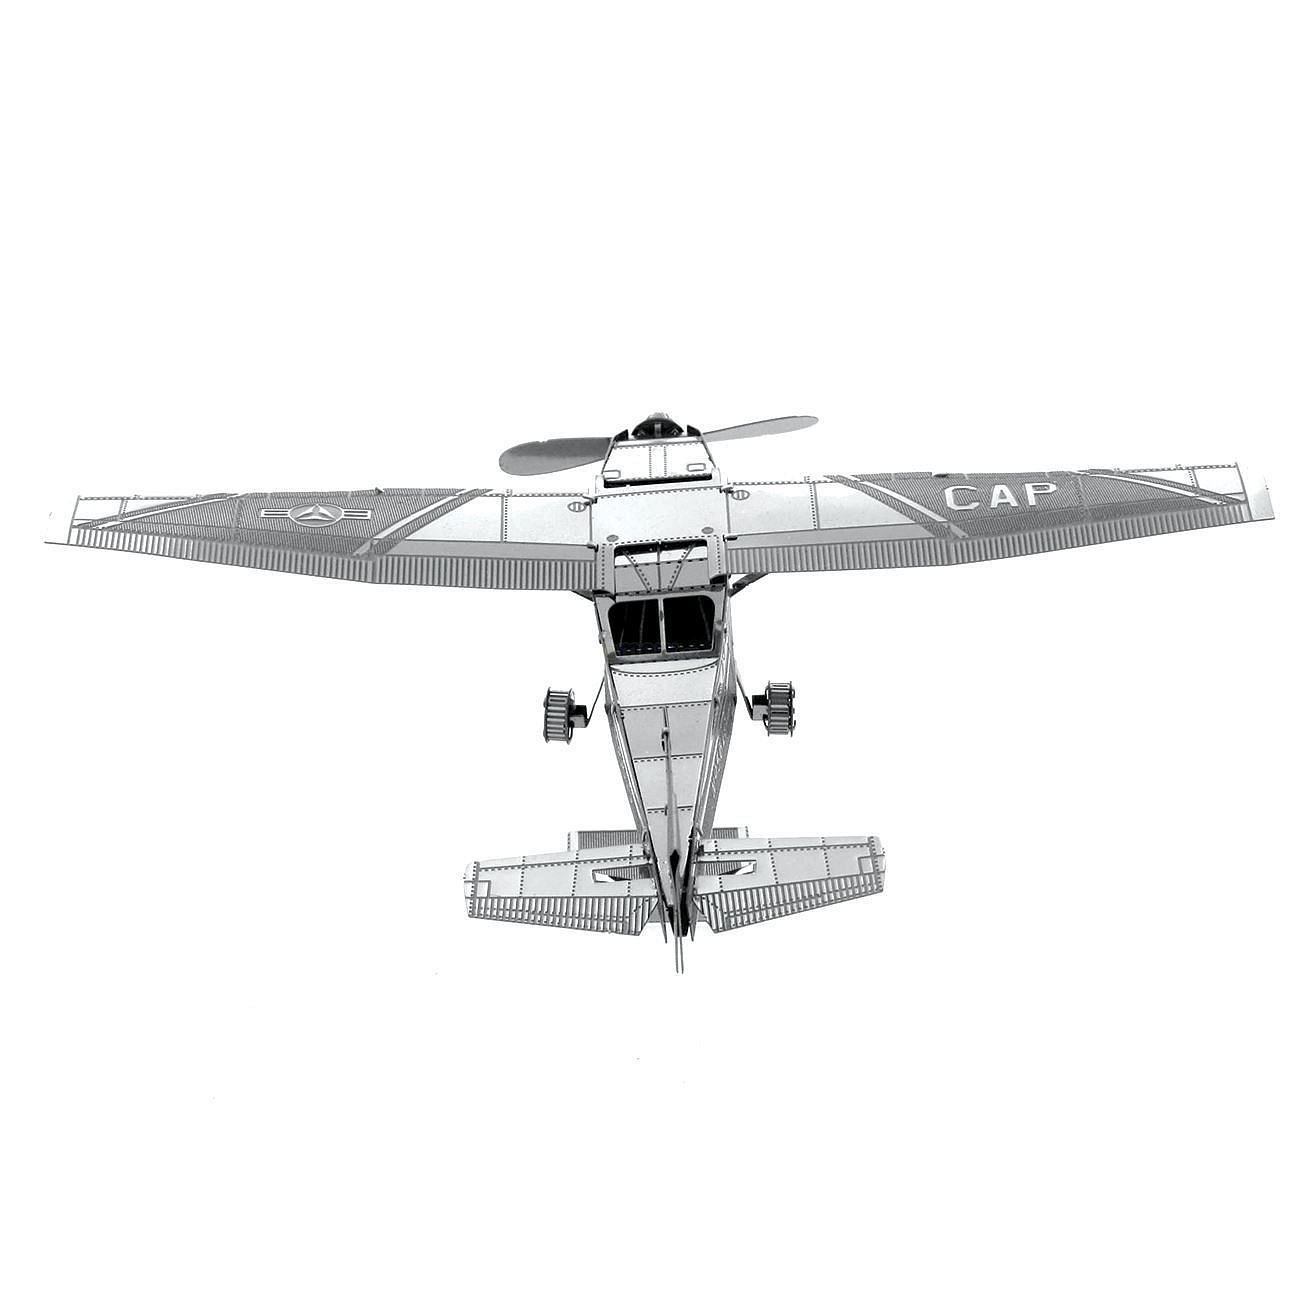 Stavebnice kovového modelu Metal Earth MMS045 Cessna 172 (032309010459)